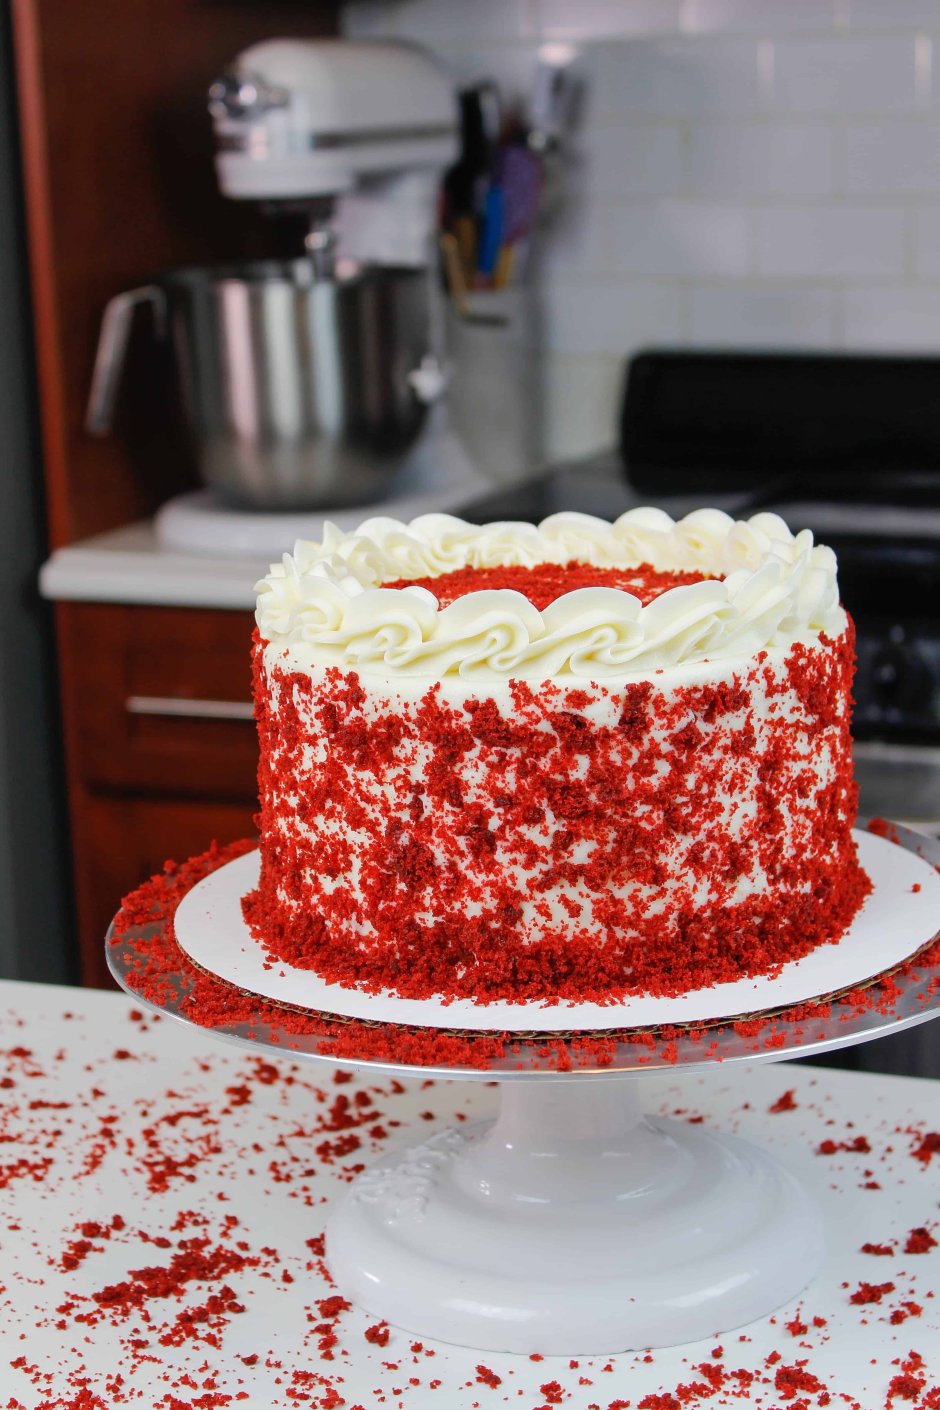 Как нарисовать торт красный бархат легко и быстро